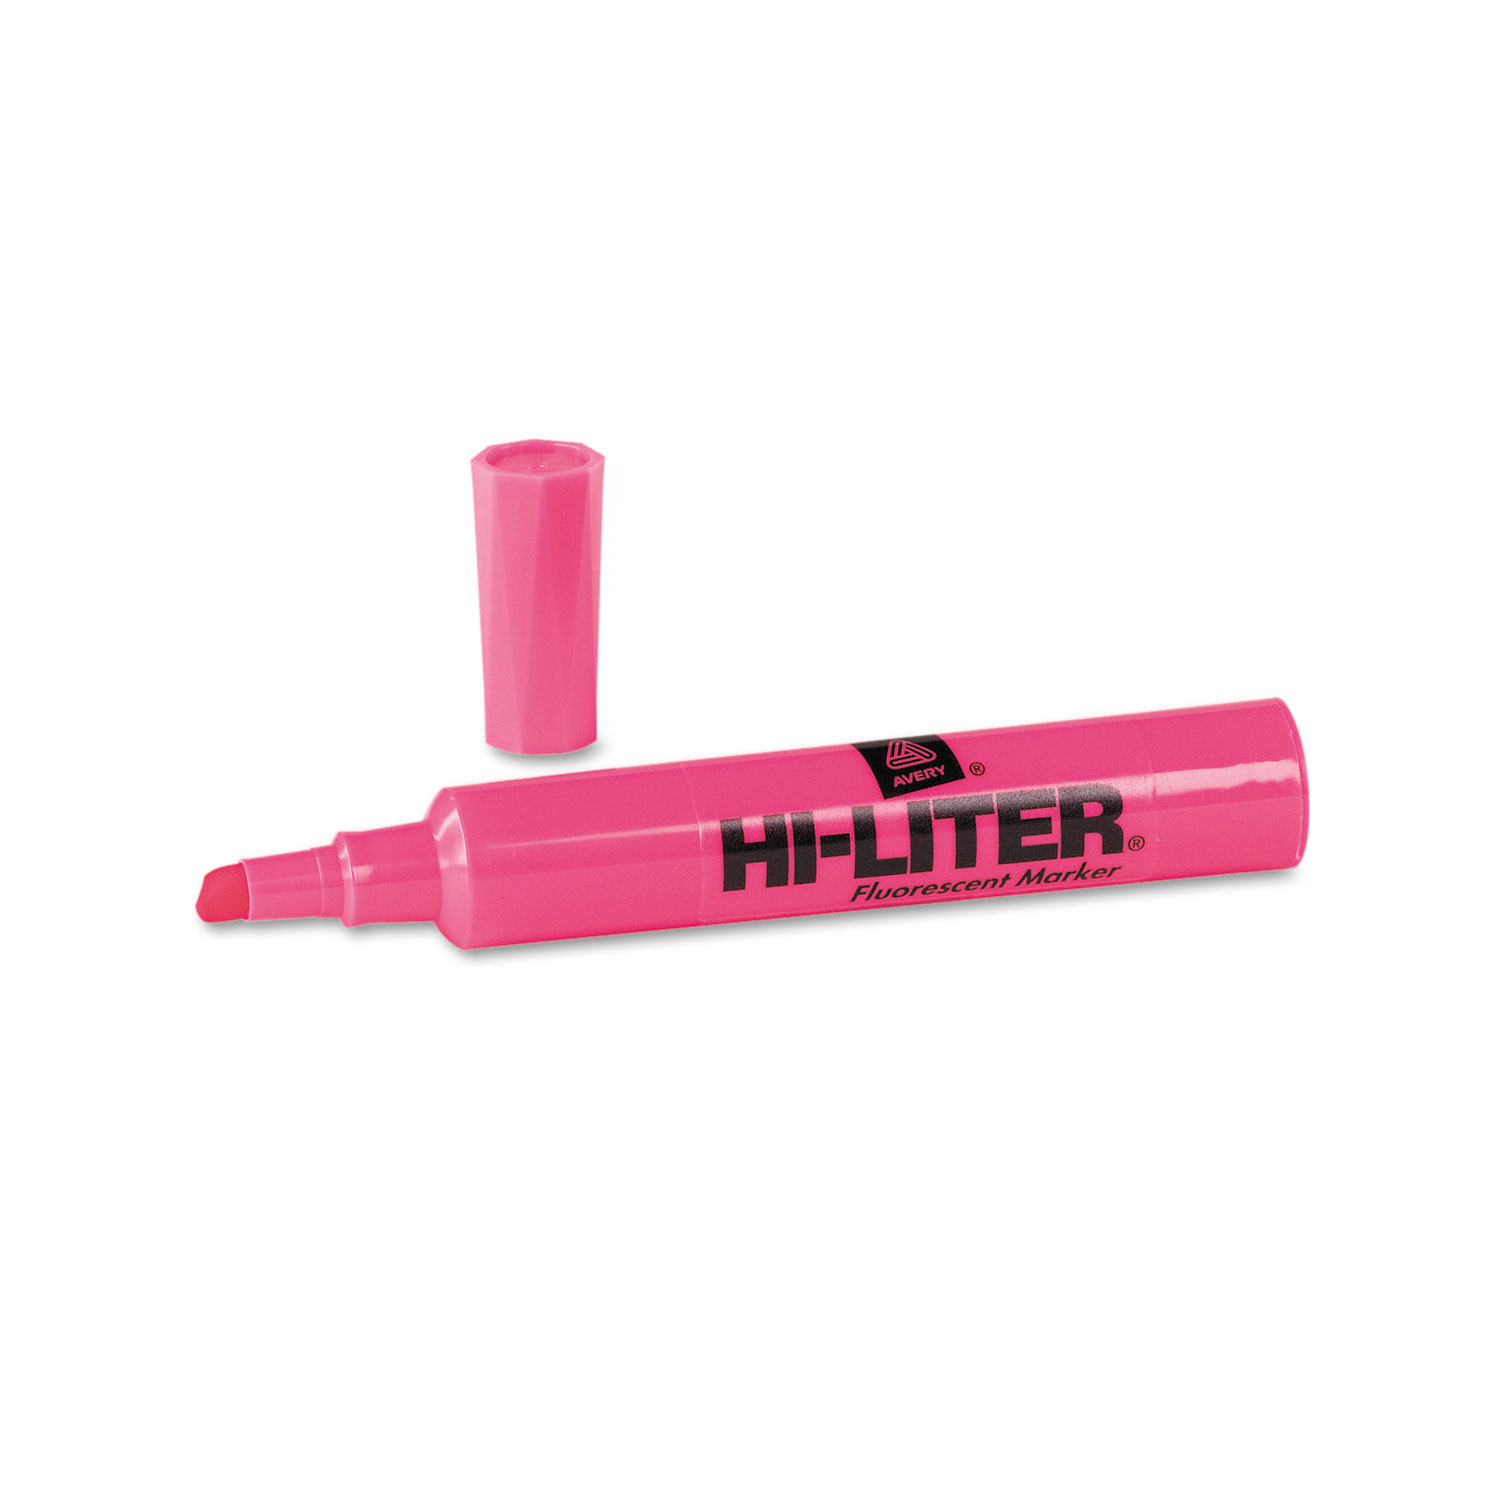 HI-LITER Desk-Style Highlighter, Chisel Tip, Fluorescent Pink Ink, Dozen